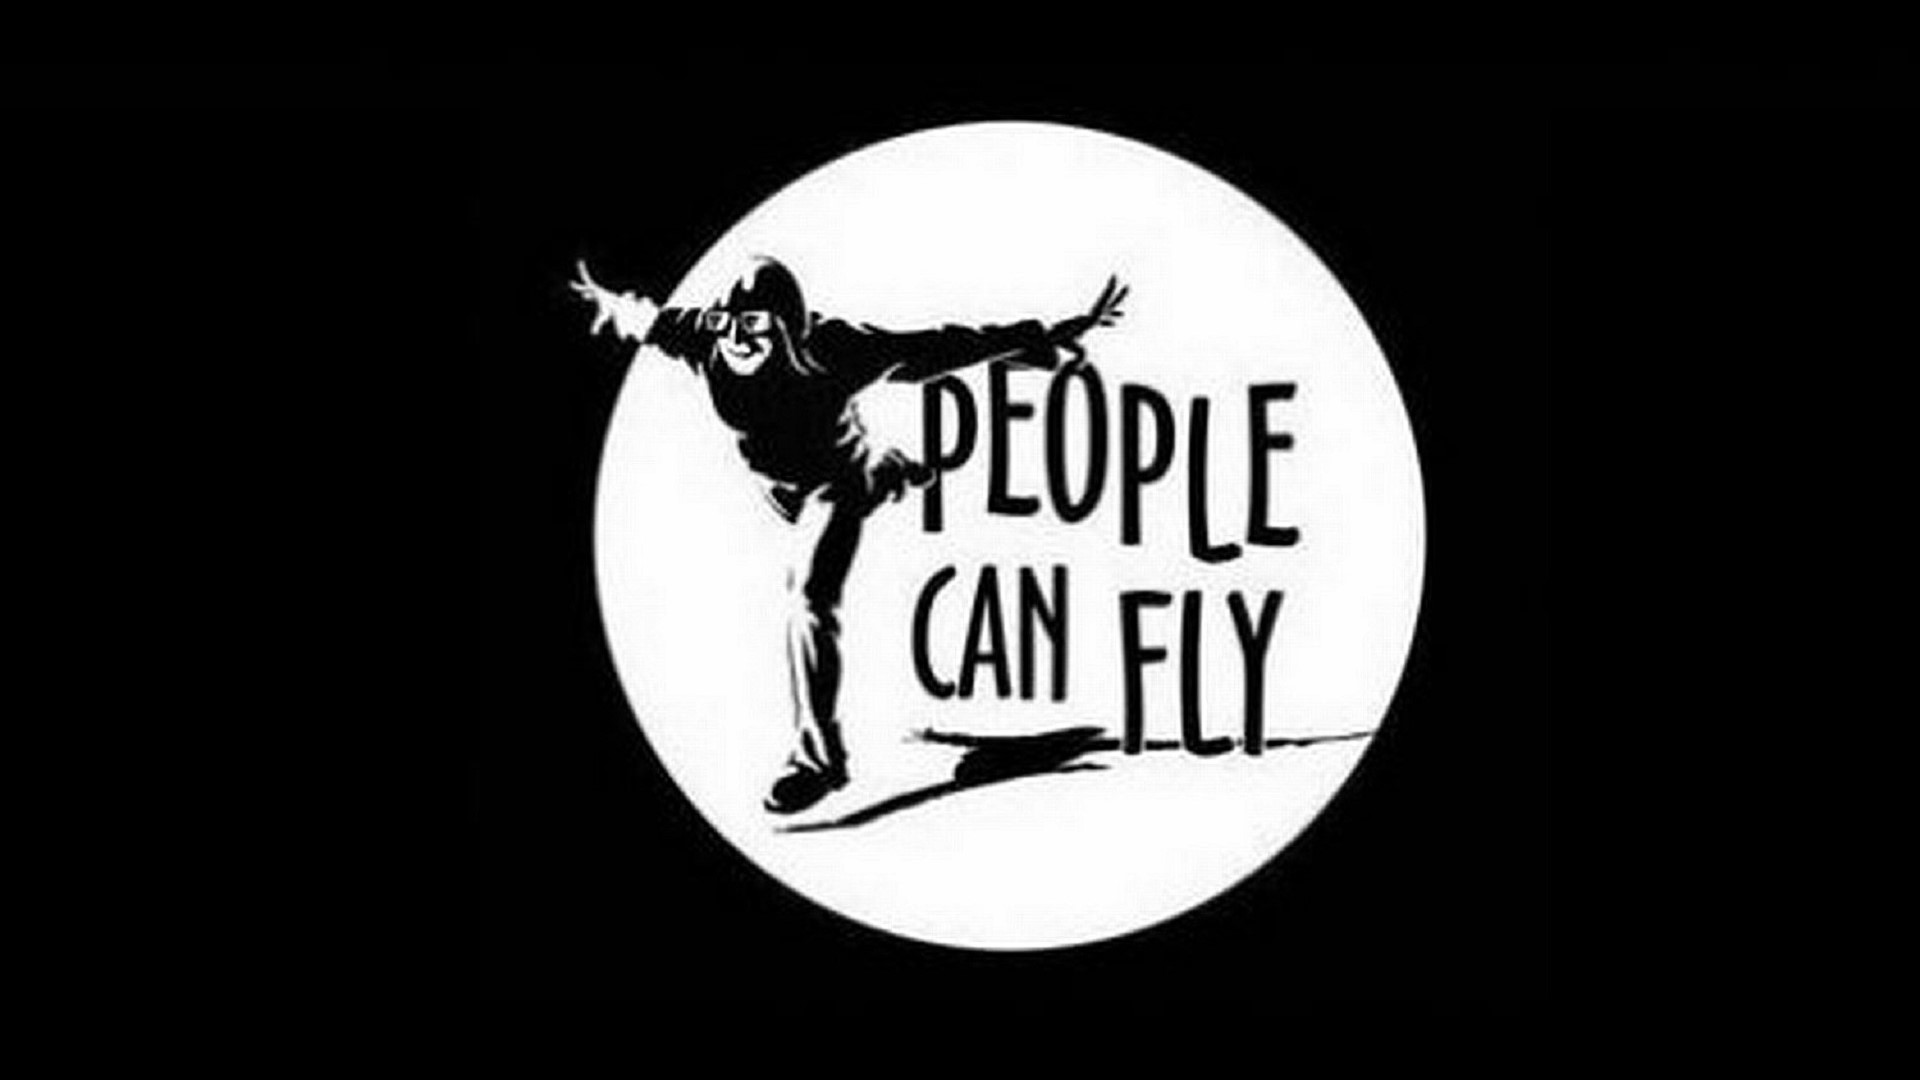 Mensen kunnen vliegen-logo